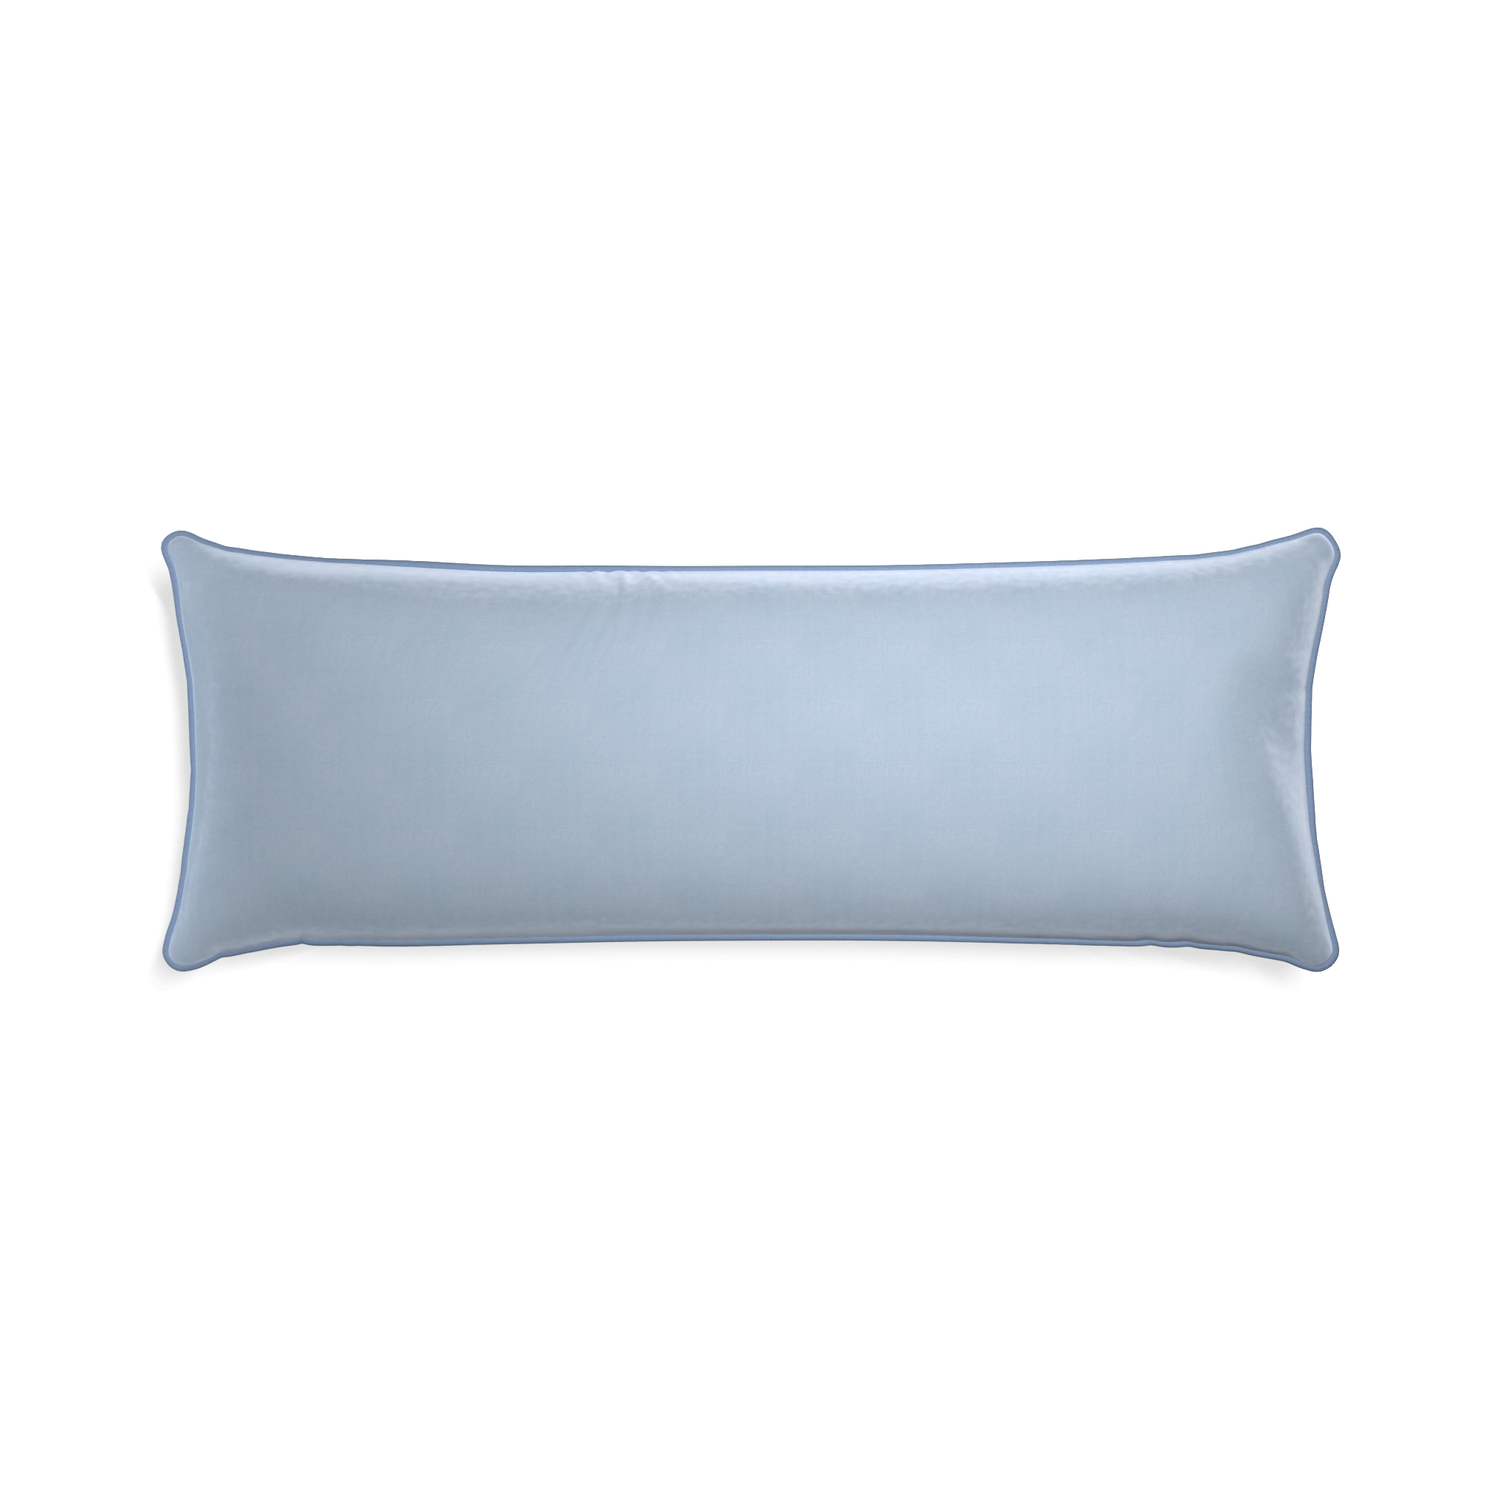 rectangle light blue velvet pillow with sky blue piping